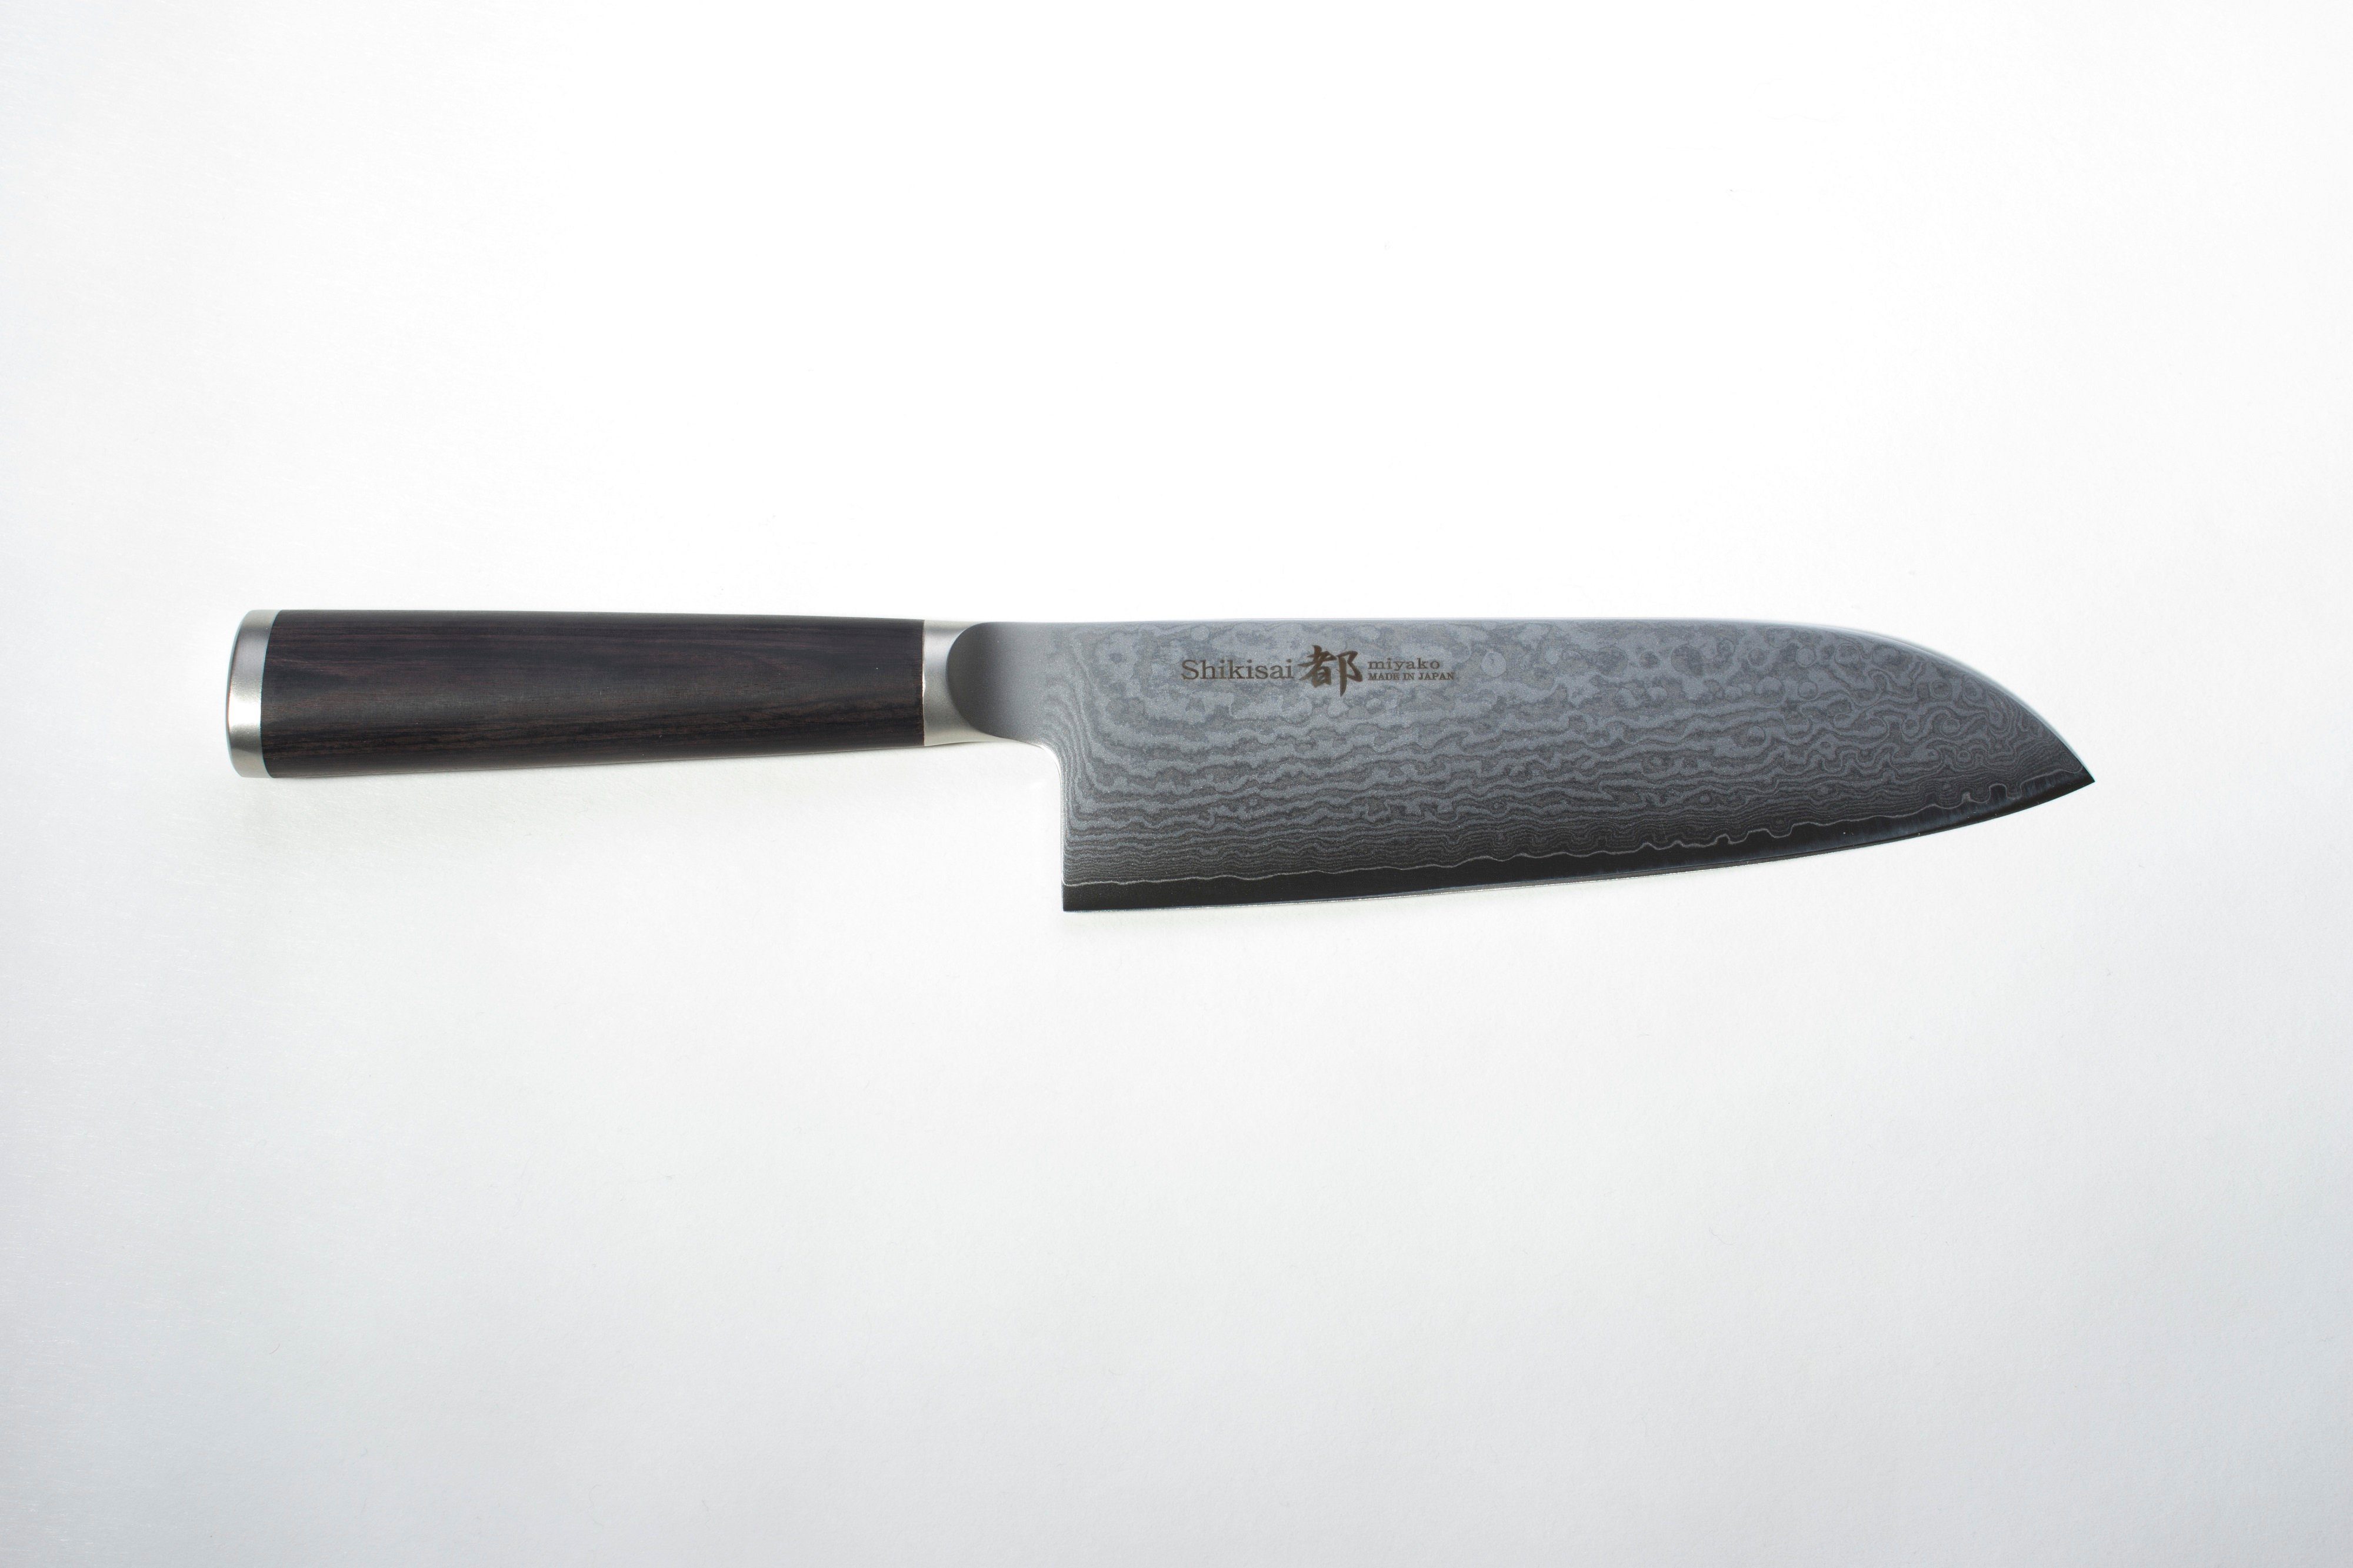 Shizu Hamono Japan Damastmesser Santoku Messer 16,5 cm Profi Kochmesser